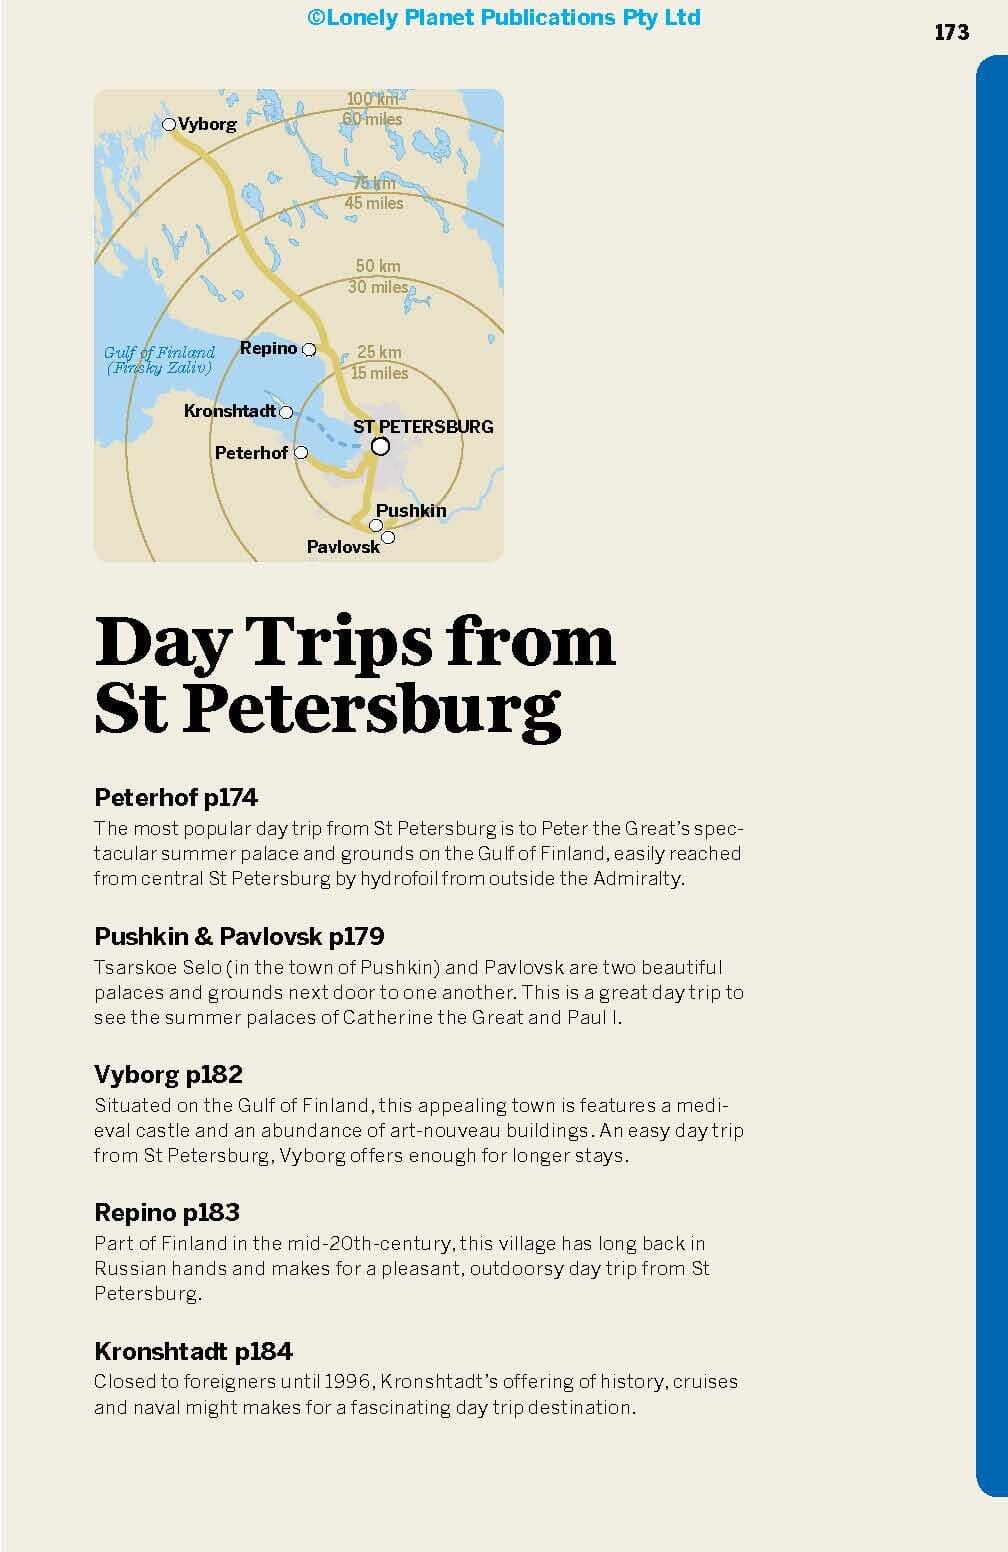 Guide de voyage (en anglais) - St-Petersburg | Lonely Planet guide de voyage Lonely Planet EN 